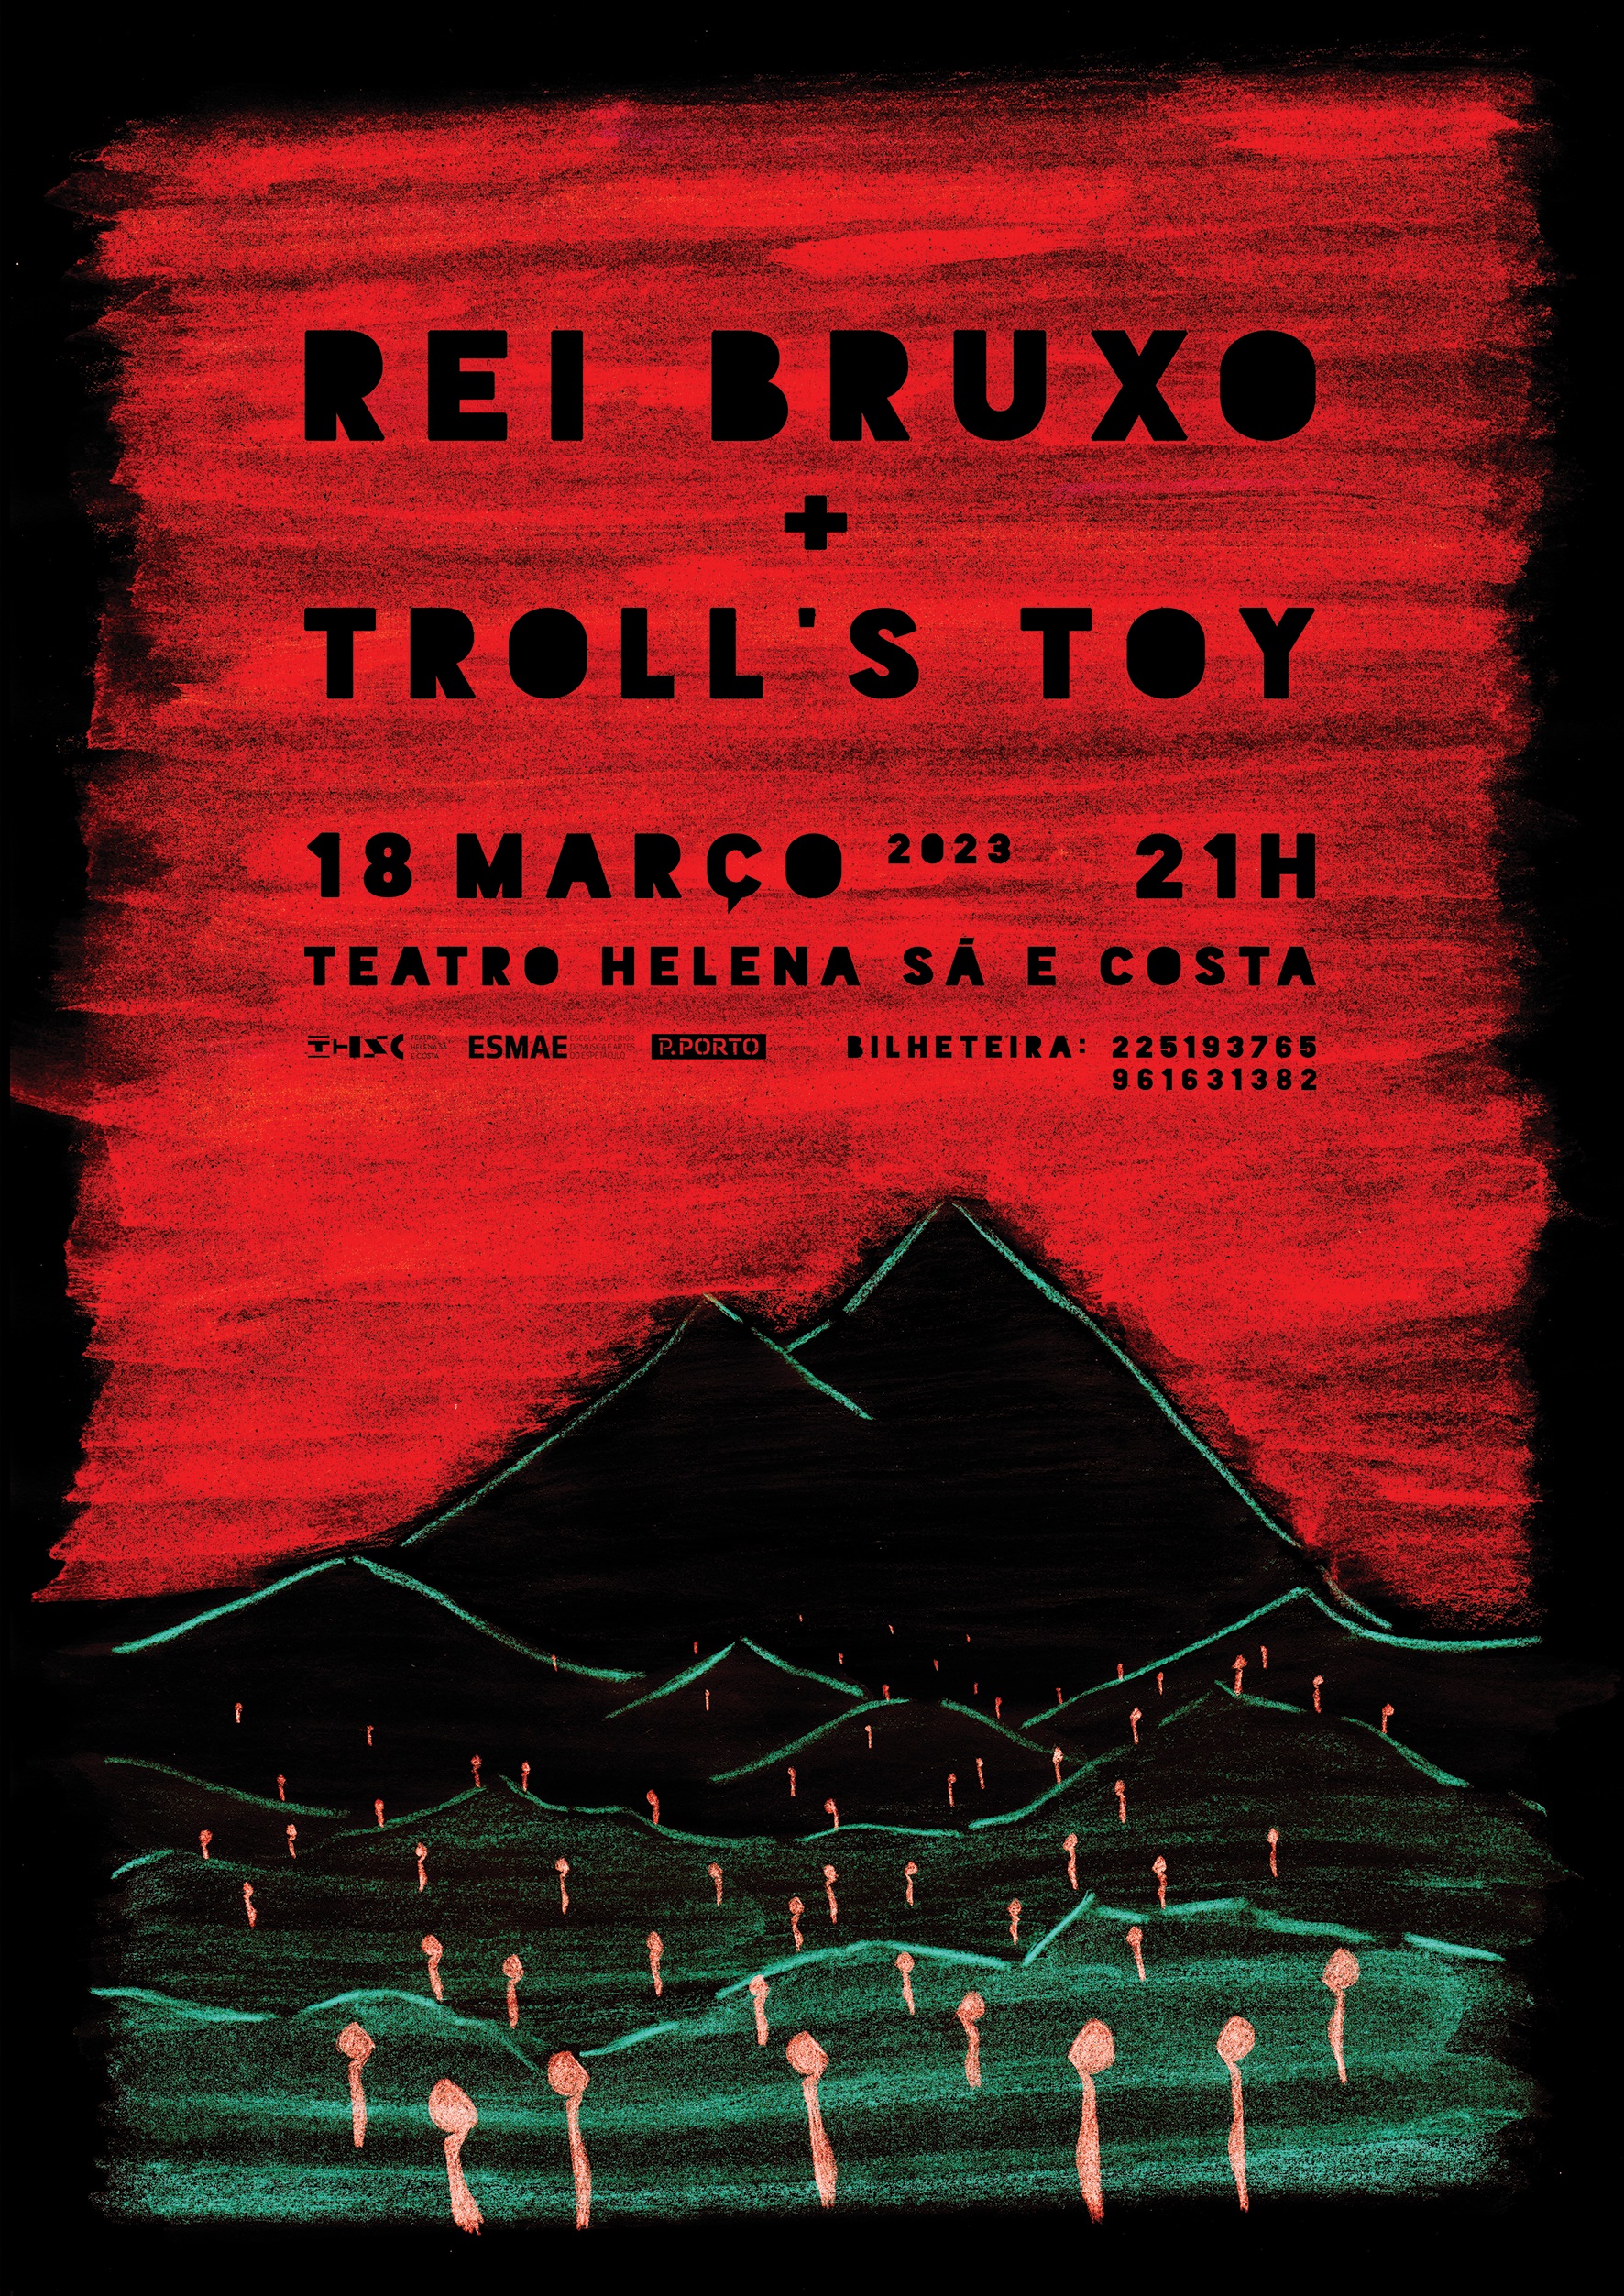 Rei Bruxo + Troll's Toy